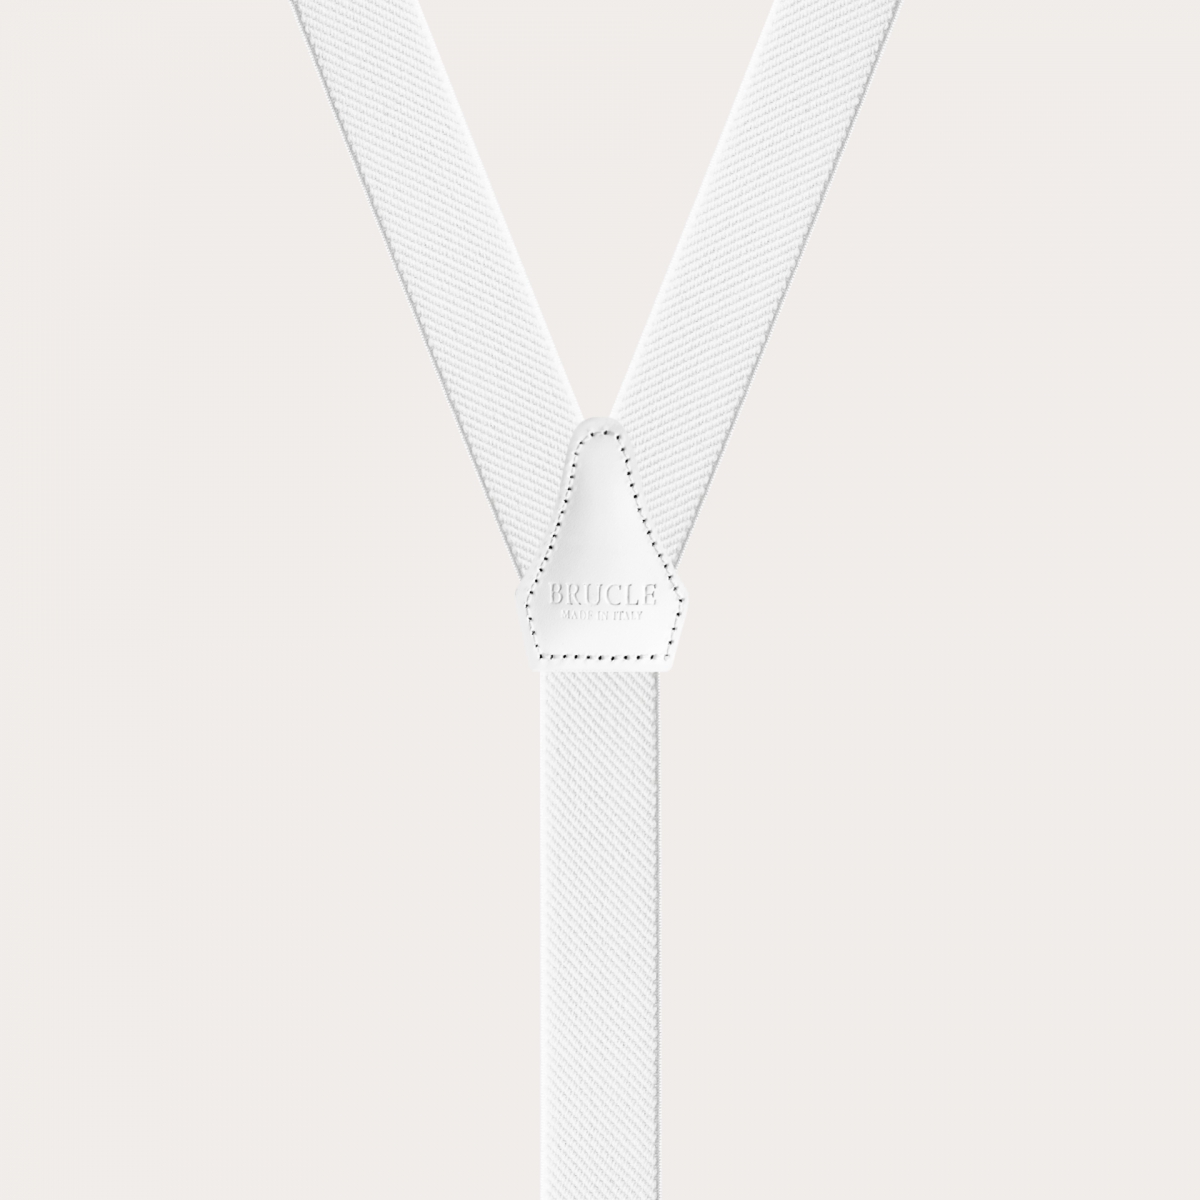 BRUCLE Eleganti bretelle elastiche a Y, bianco